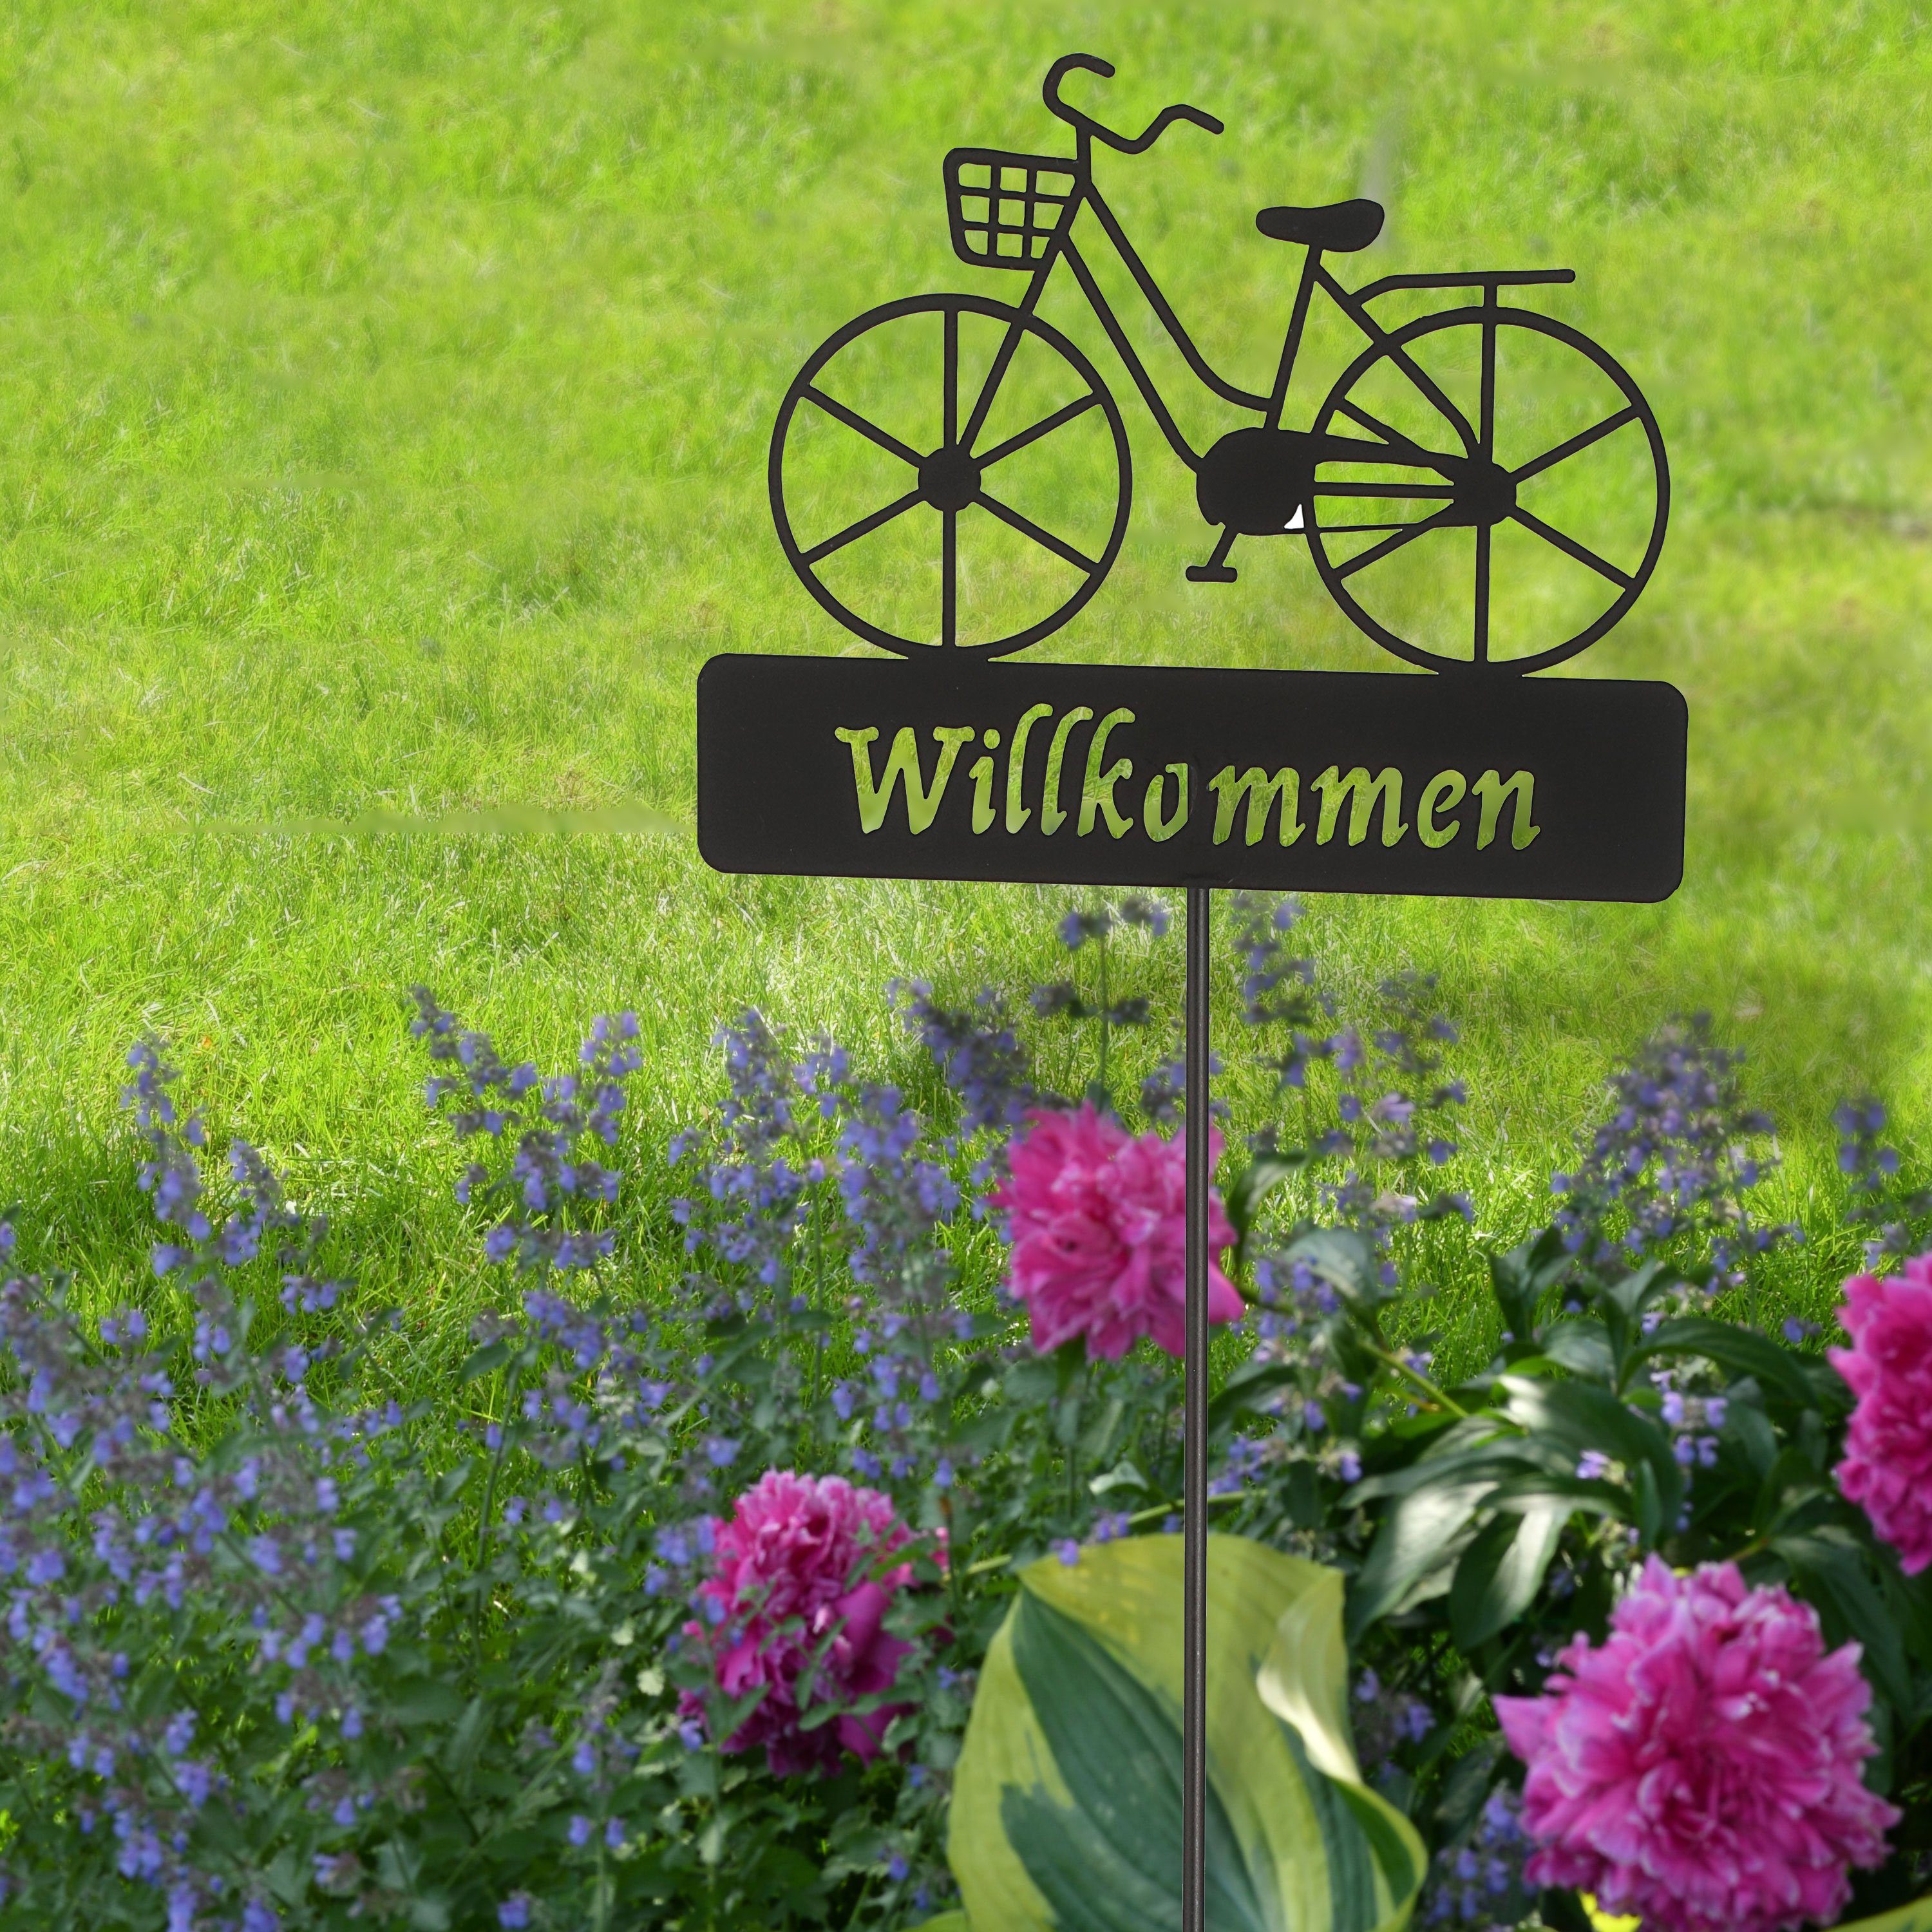 CEPEWA Gartenstecker Gartenstecker Willkommen Fahrrad